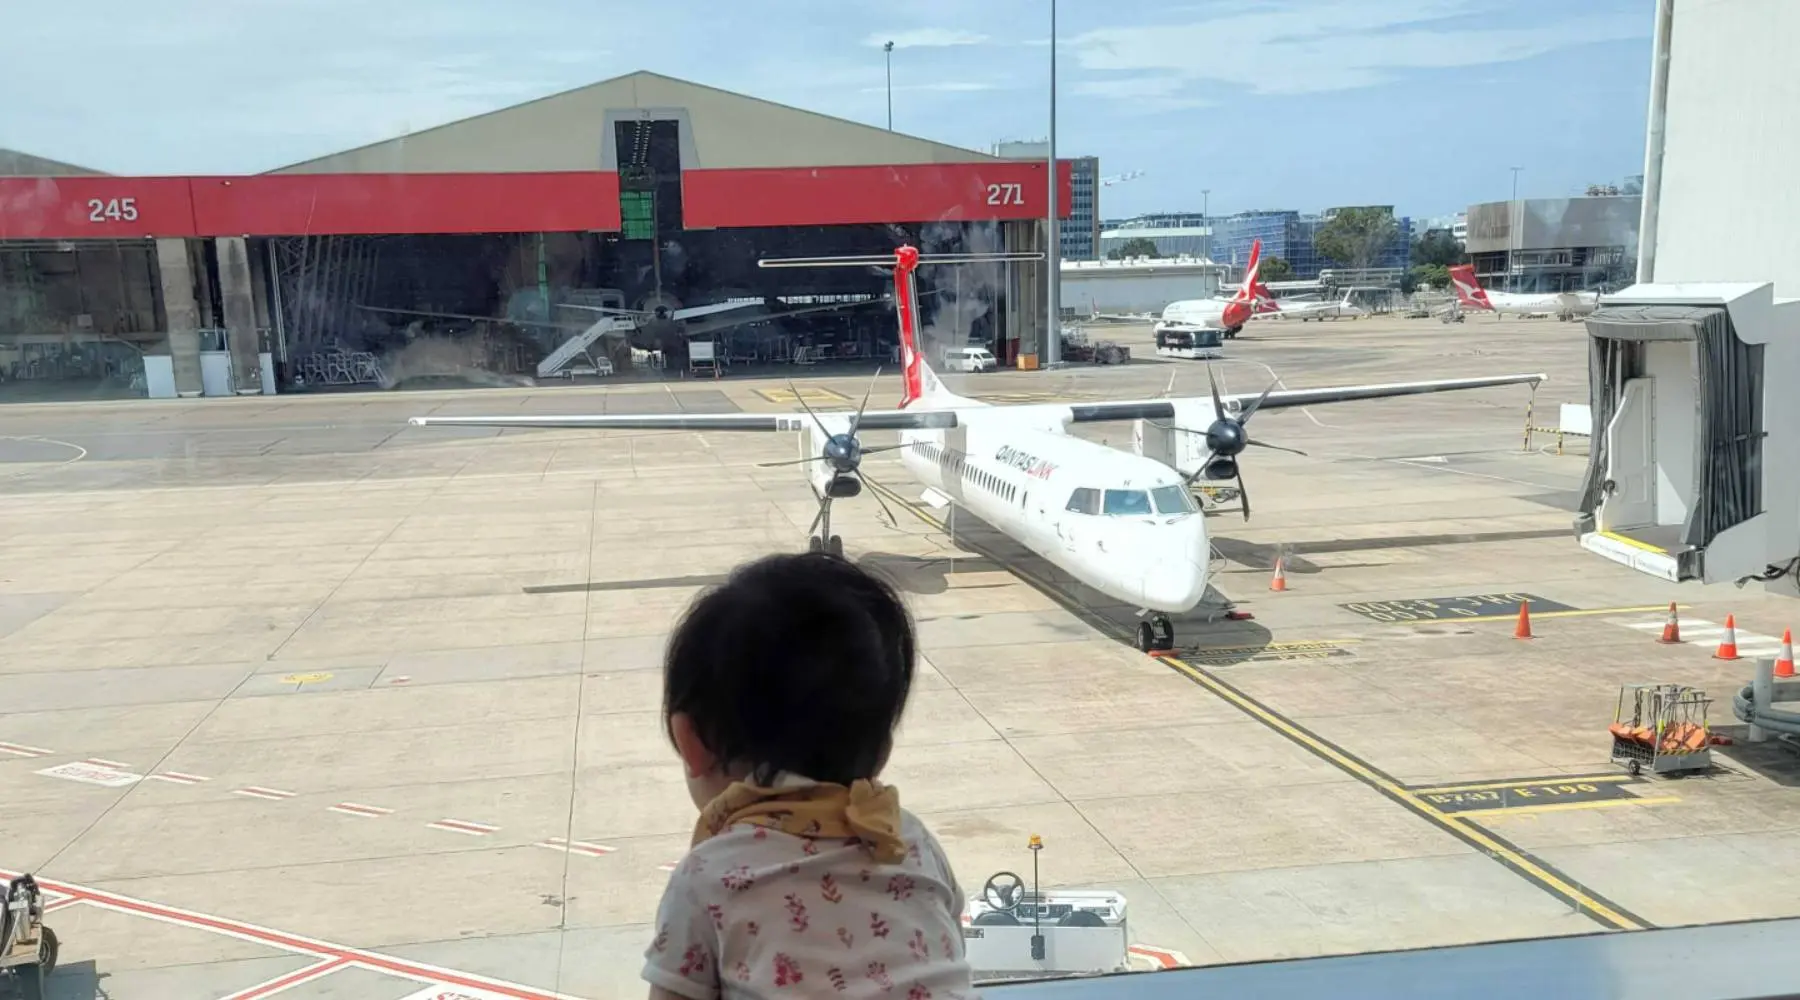 Baby staring at Qantas plane